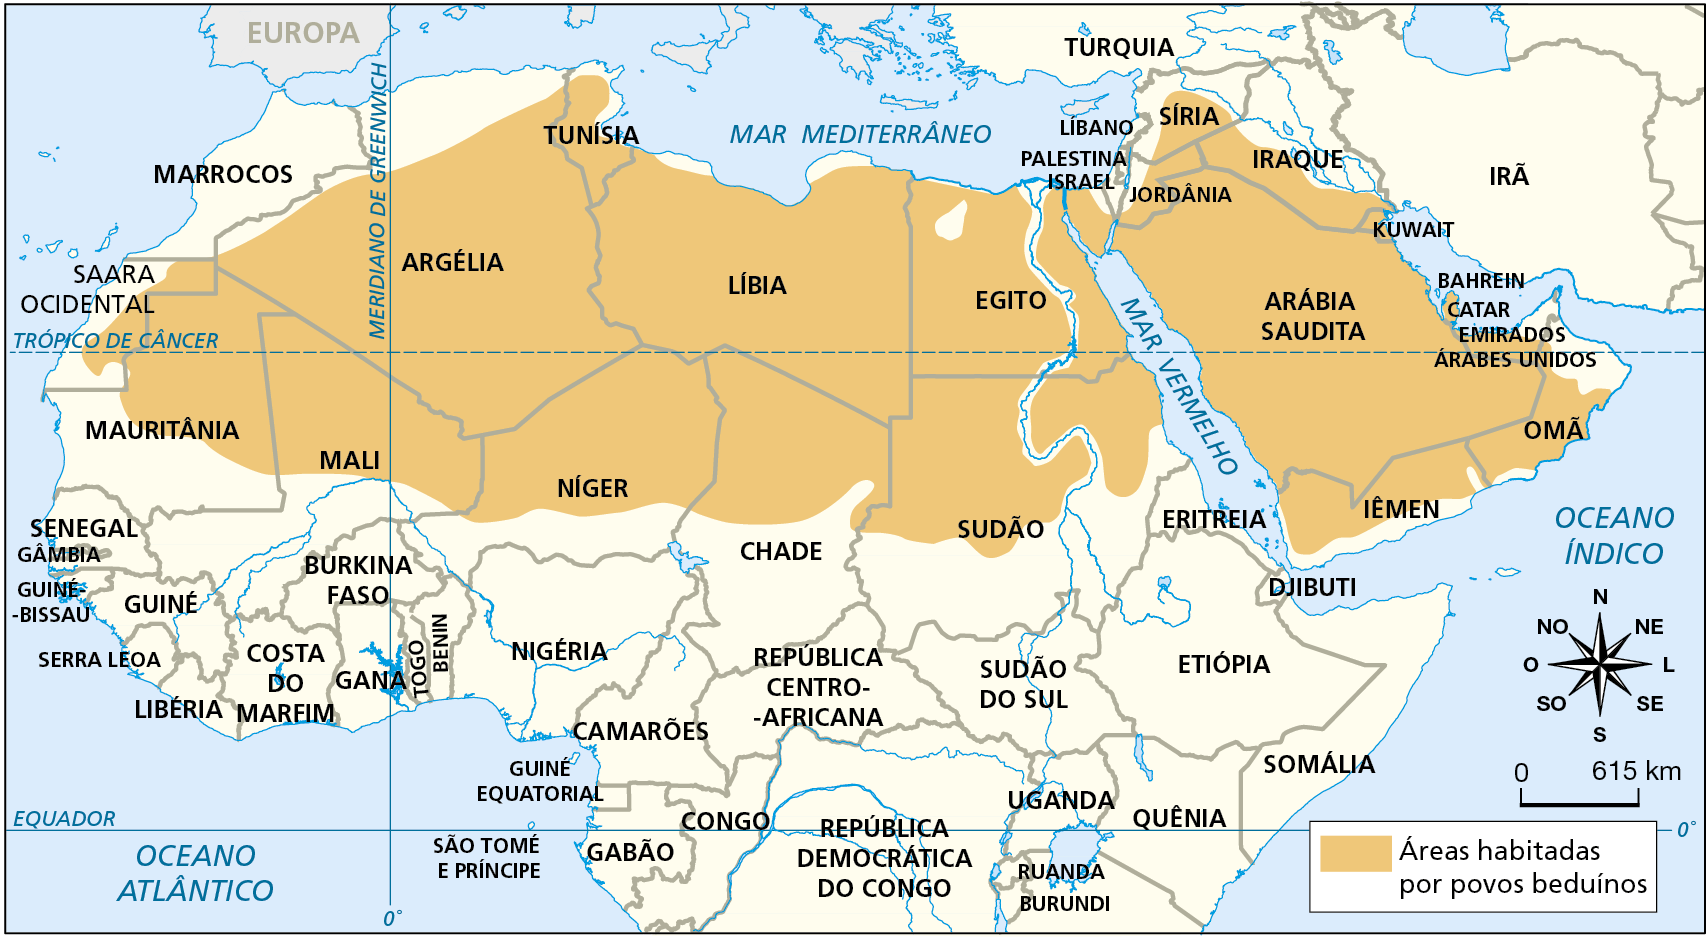 Mapa. África e Ásia: localização dos povos beduínos. Mapa político da África e de parte do continente asiático com a localização da área habitada pelos povos beduínos. Áreas habitadas por povos beduínos: norte da África e grande parte do Oriente Médio, abrangendo o território de parte do Saara Ocidental, Mauritânia, Argélia, norte de Mali, norte de Níger, norte de Chade, Líbia, Egito, Tunísia, norte e centro do Sudão, Jordânia, Síria, Iraque, Arábia Saudita, Kuwait, Bahrein, Catar, Iêmen, Omã e Emirados Árabes Unidos. Na parte inferior direita, rosa dos ventos e escala de 0 a 615 quilômetros.